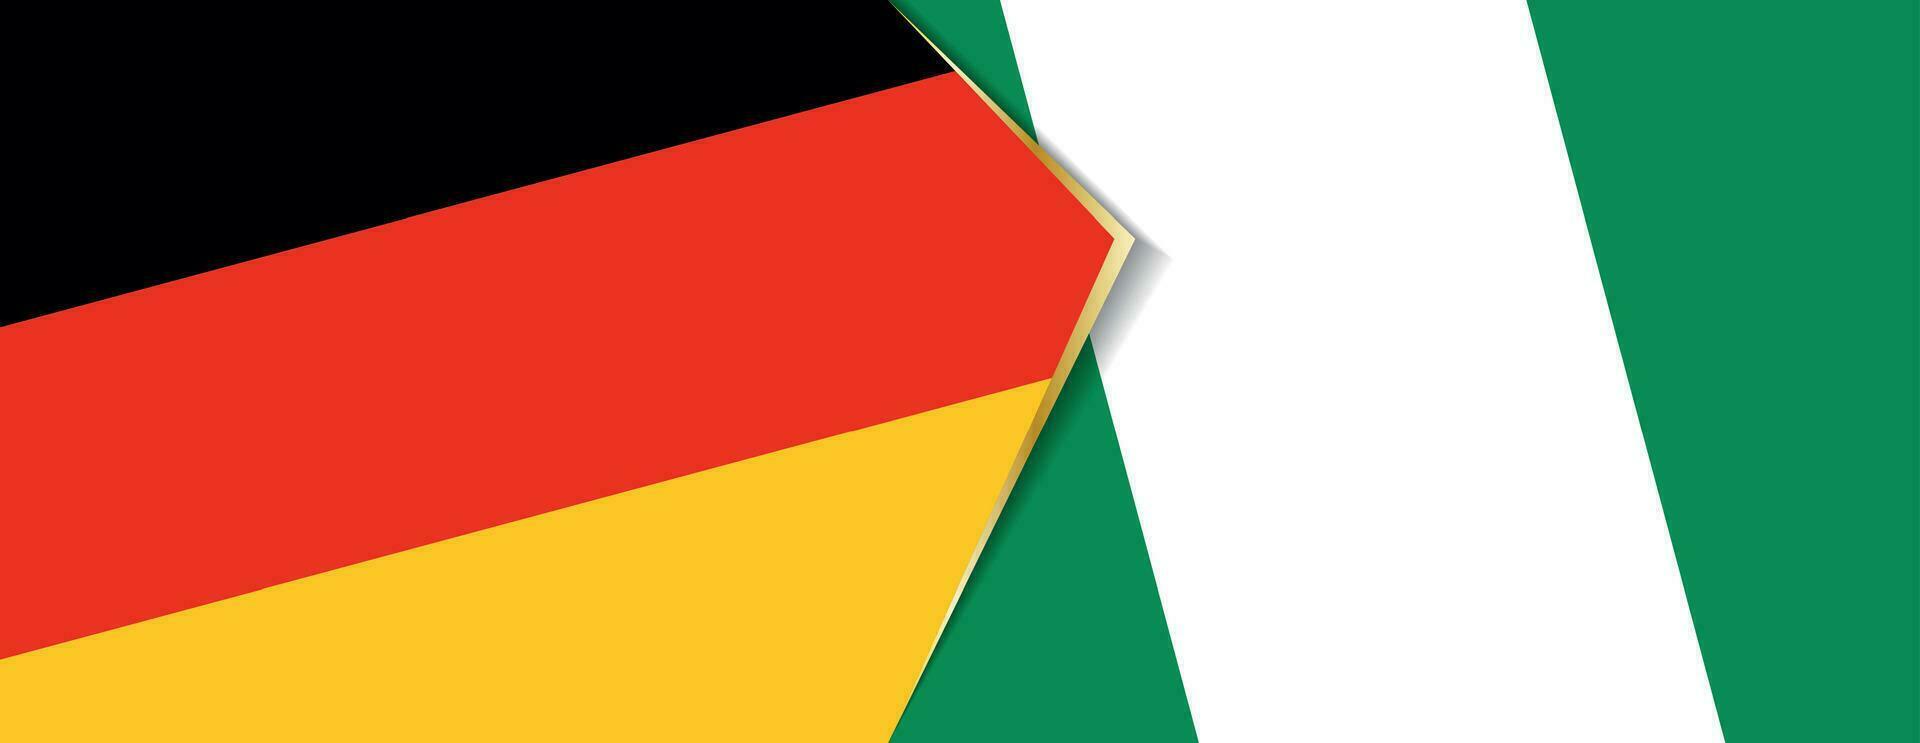 Deutschland und Nigeria Flaggen, zwei Vektor Flaggen.